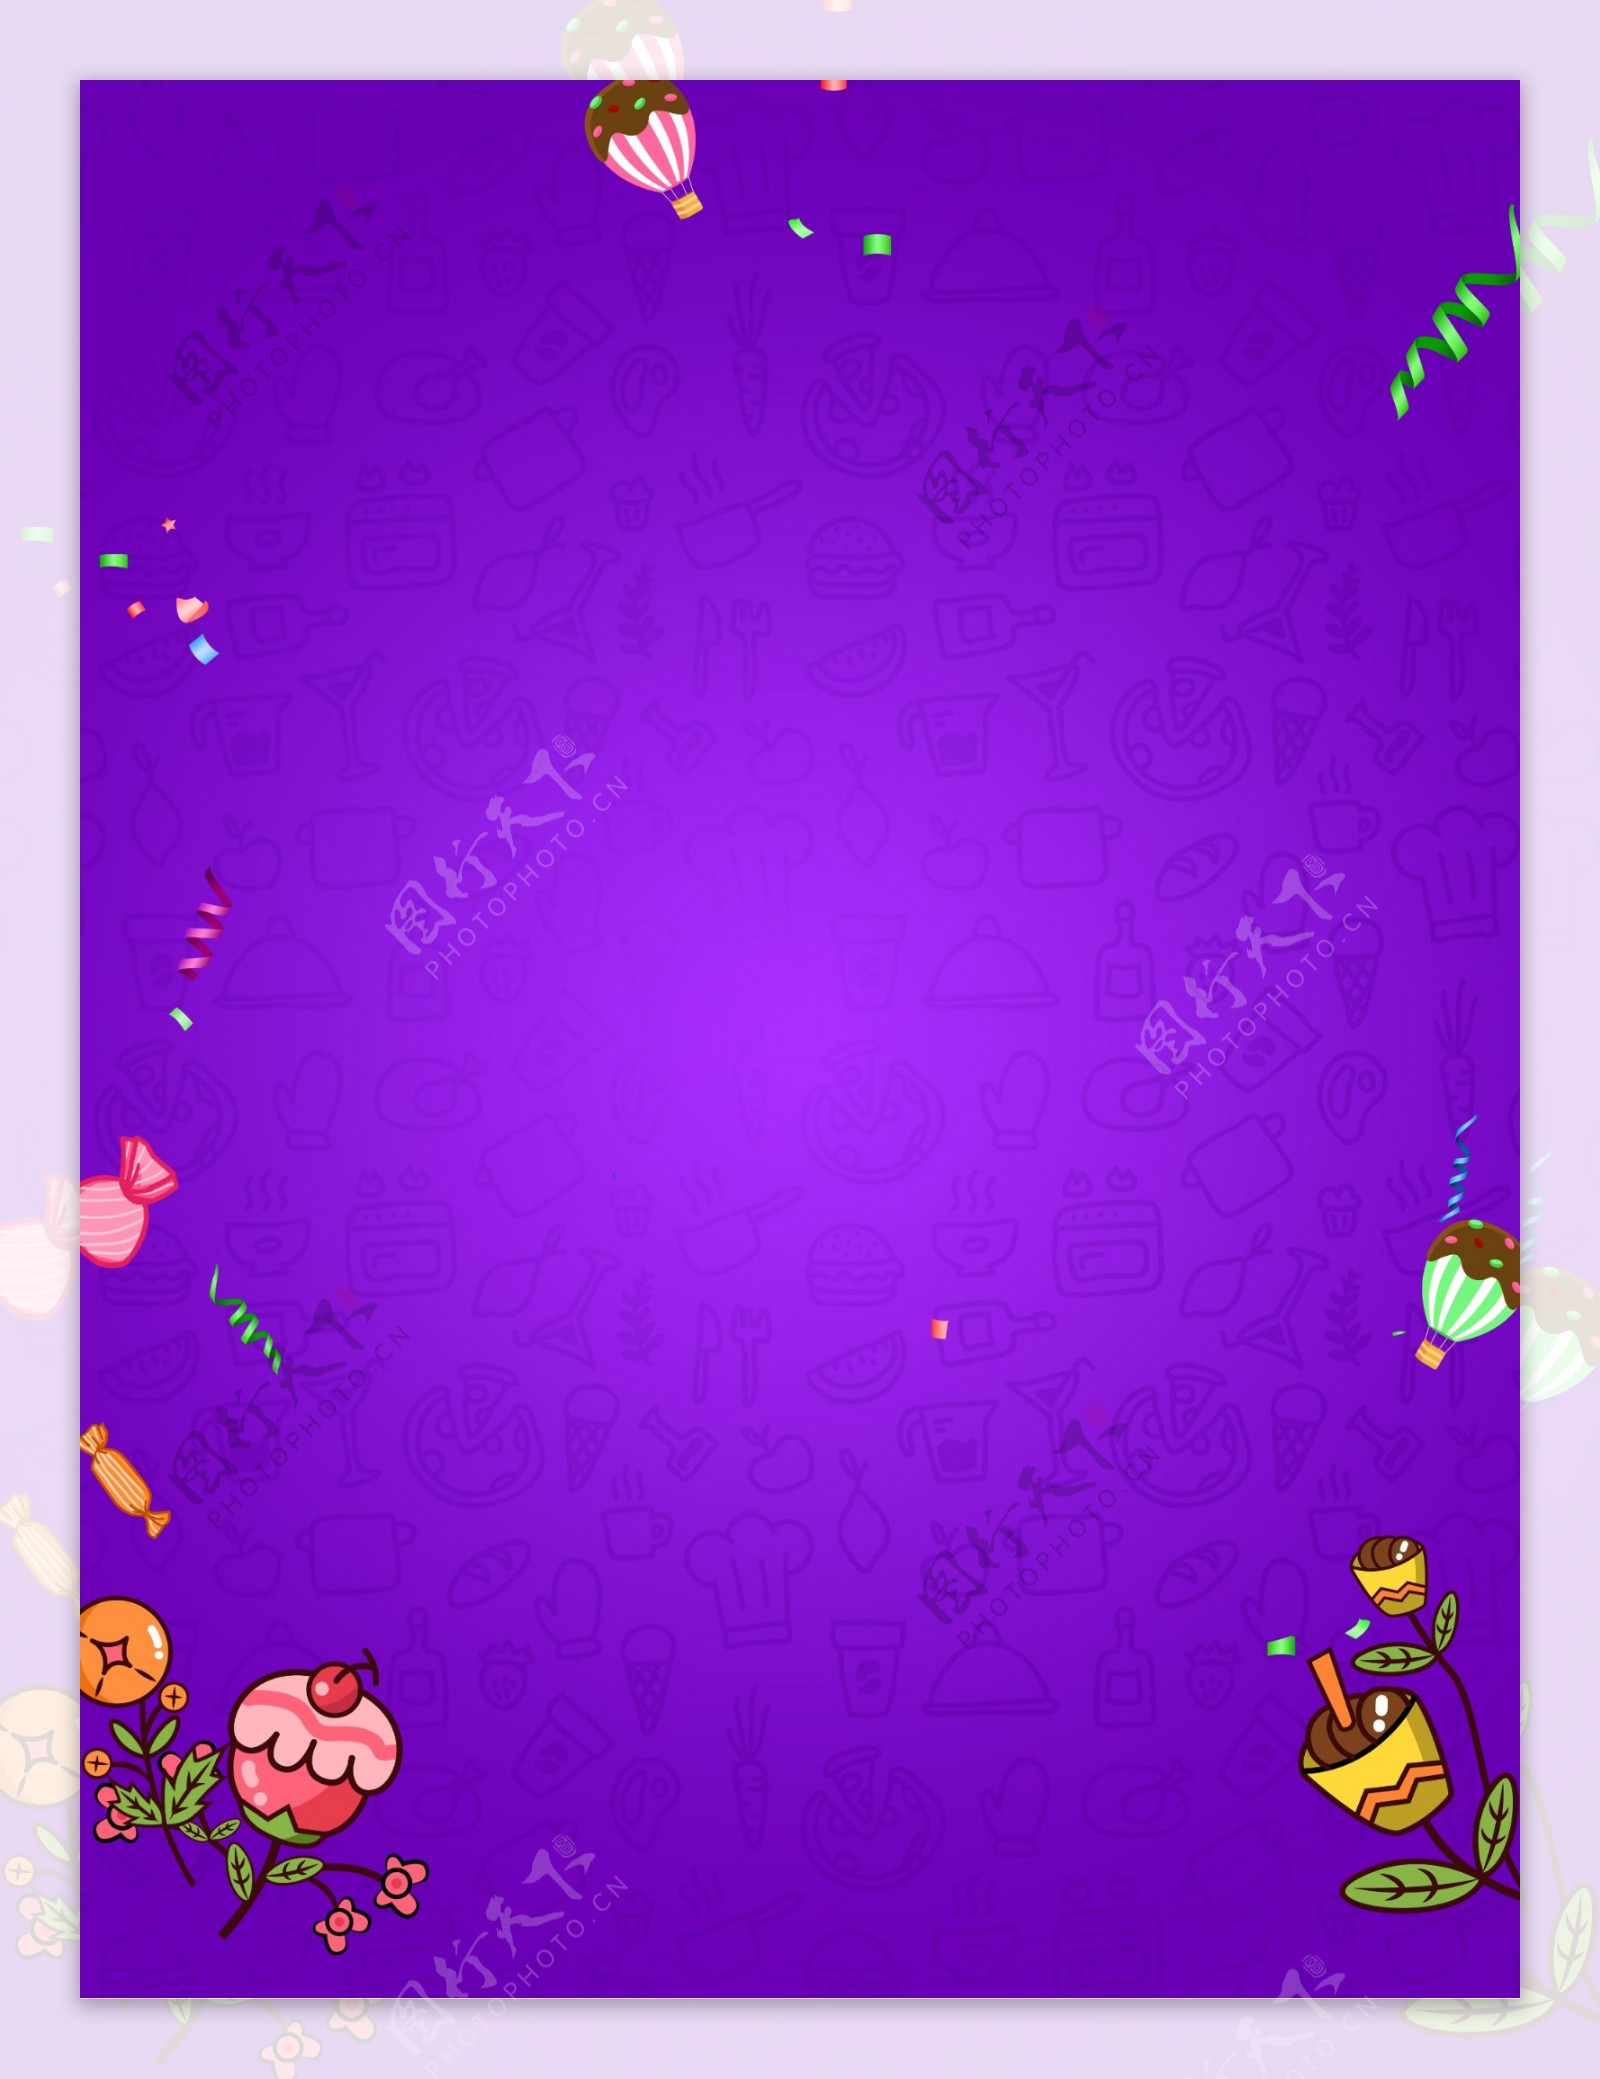 简约紫色系夏季甜品背景设计